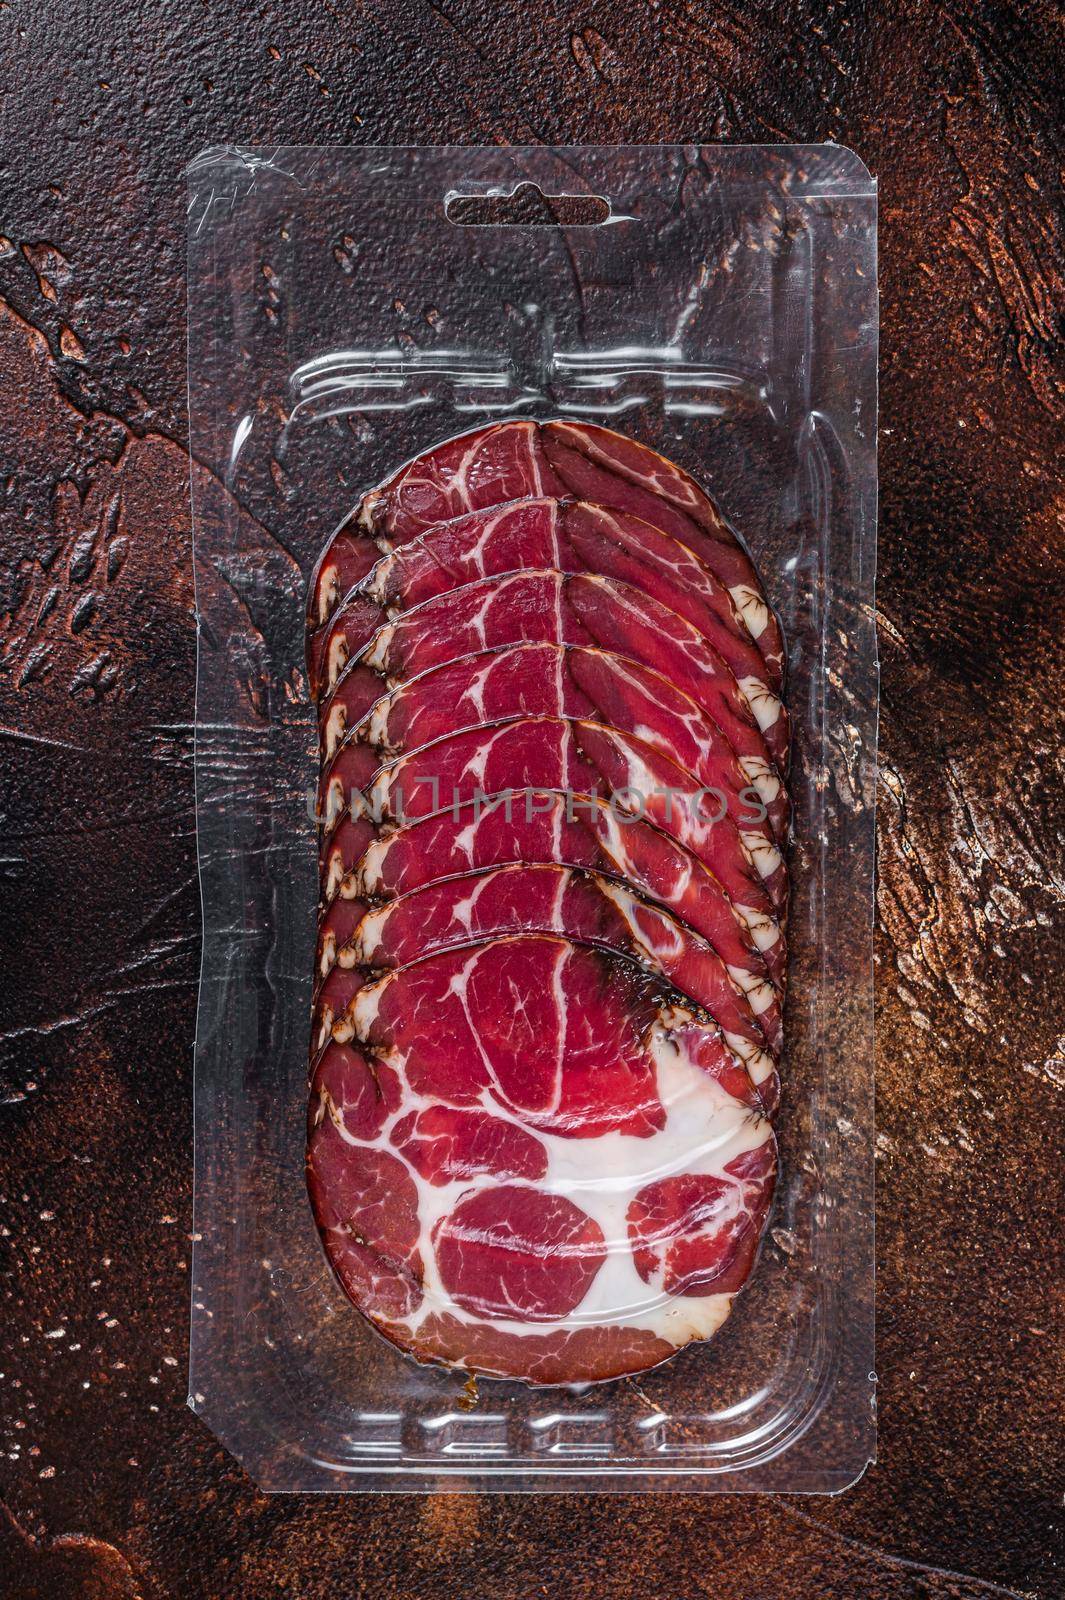 Italian sliced cured coppa meat in vacuum packaging. Dark background. Top view.